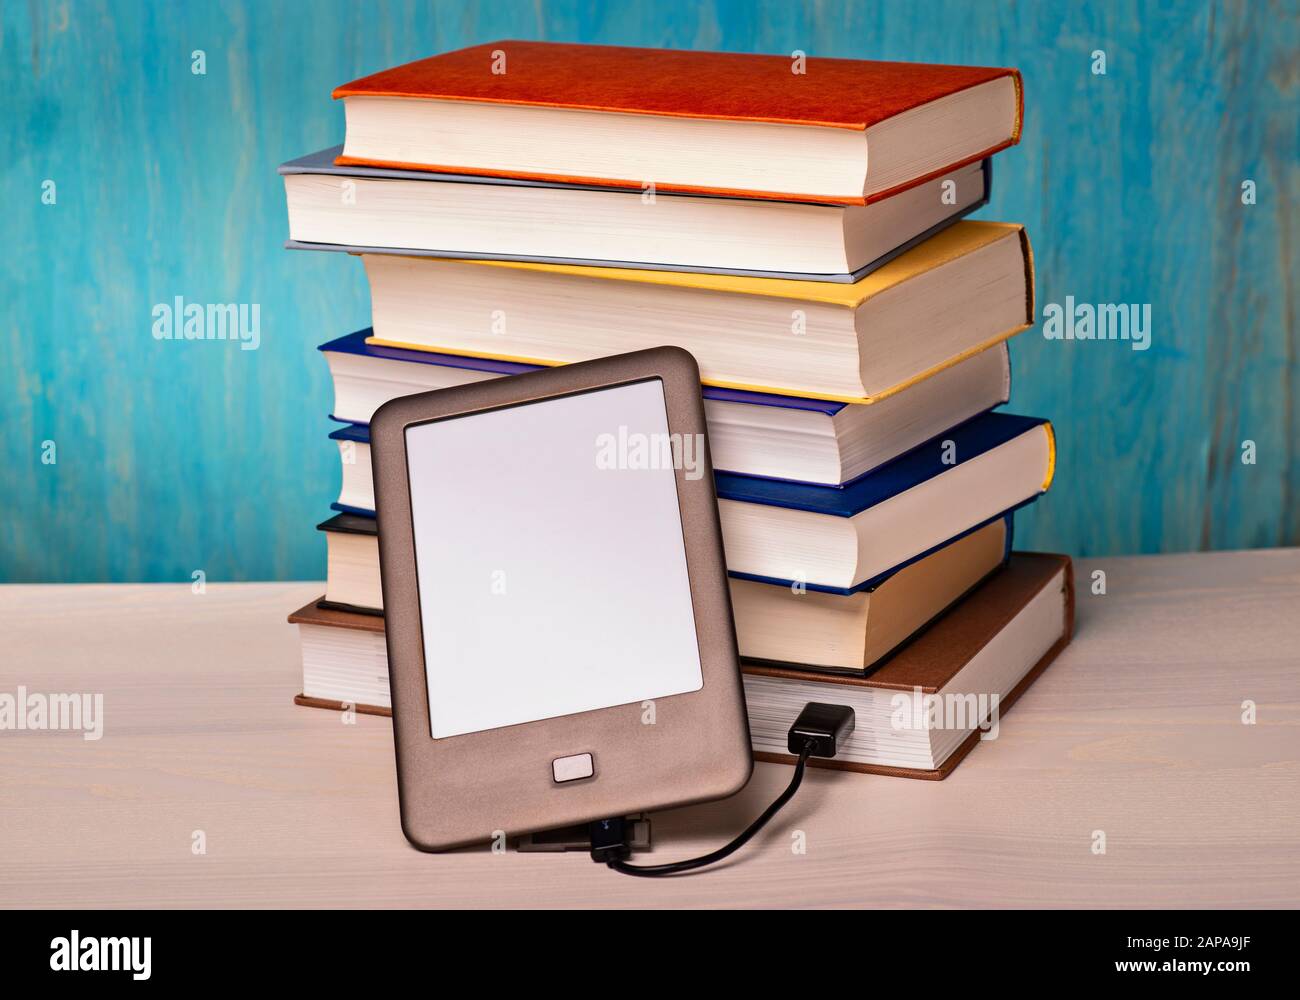 Un lettore e-book è collegato a una pila di libri tramite cavo USB Foto Stock